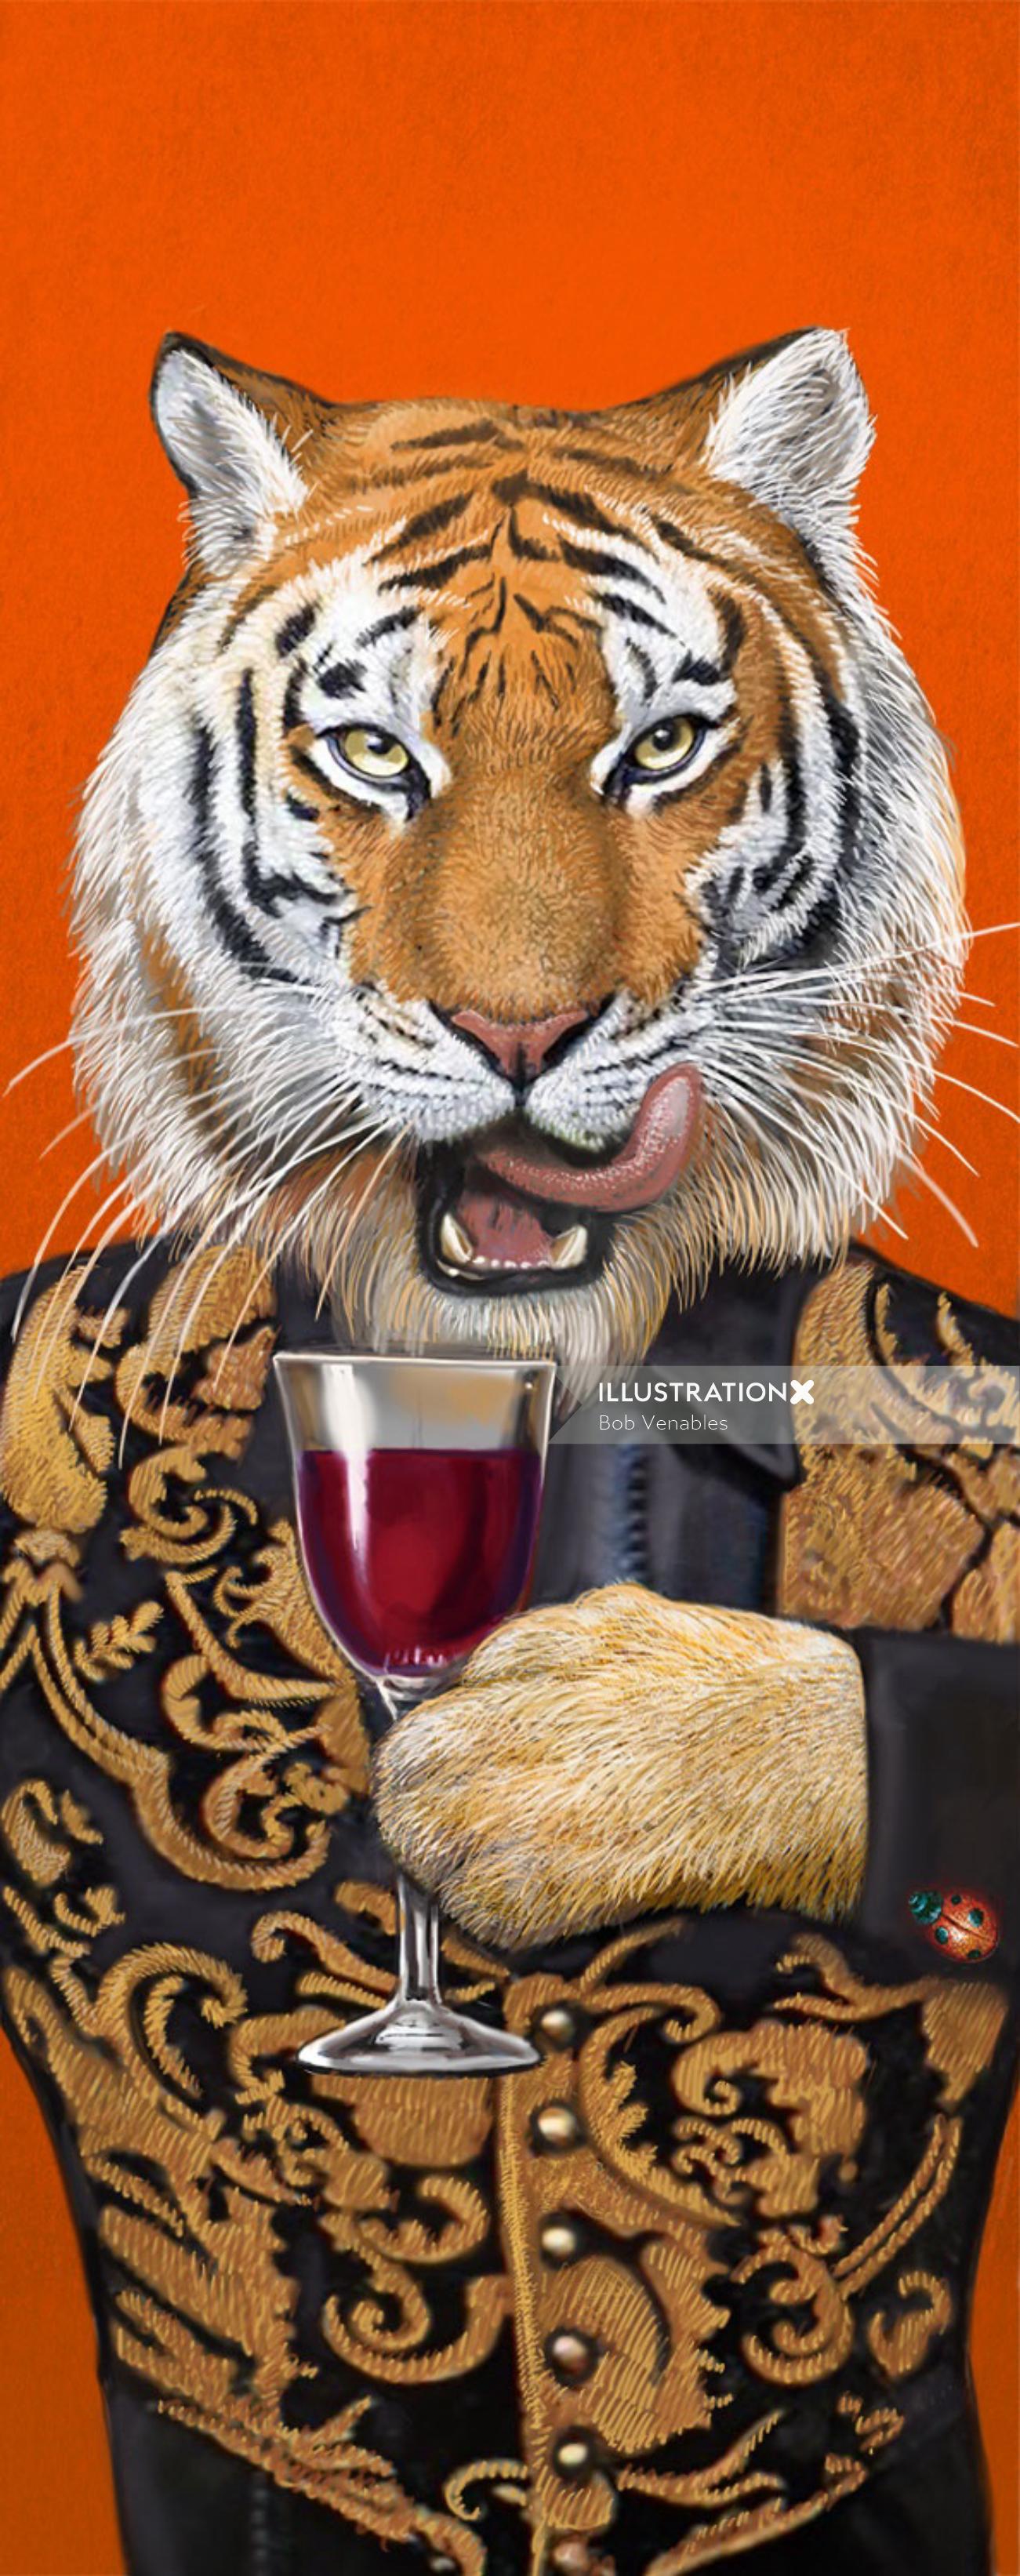 Portrait illustration of tiger 